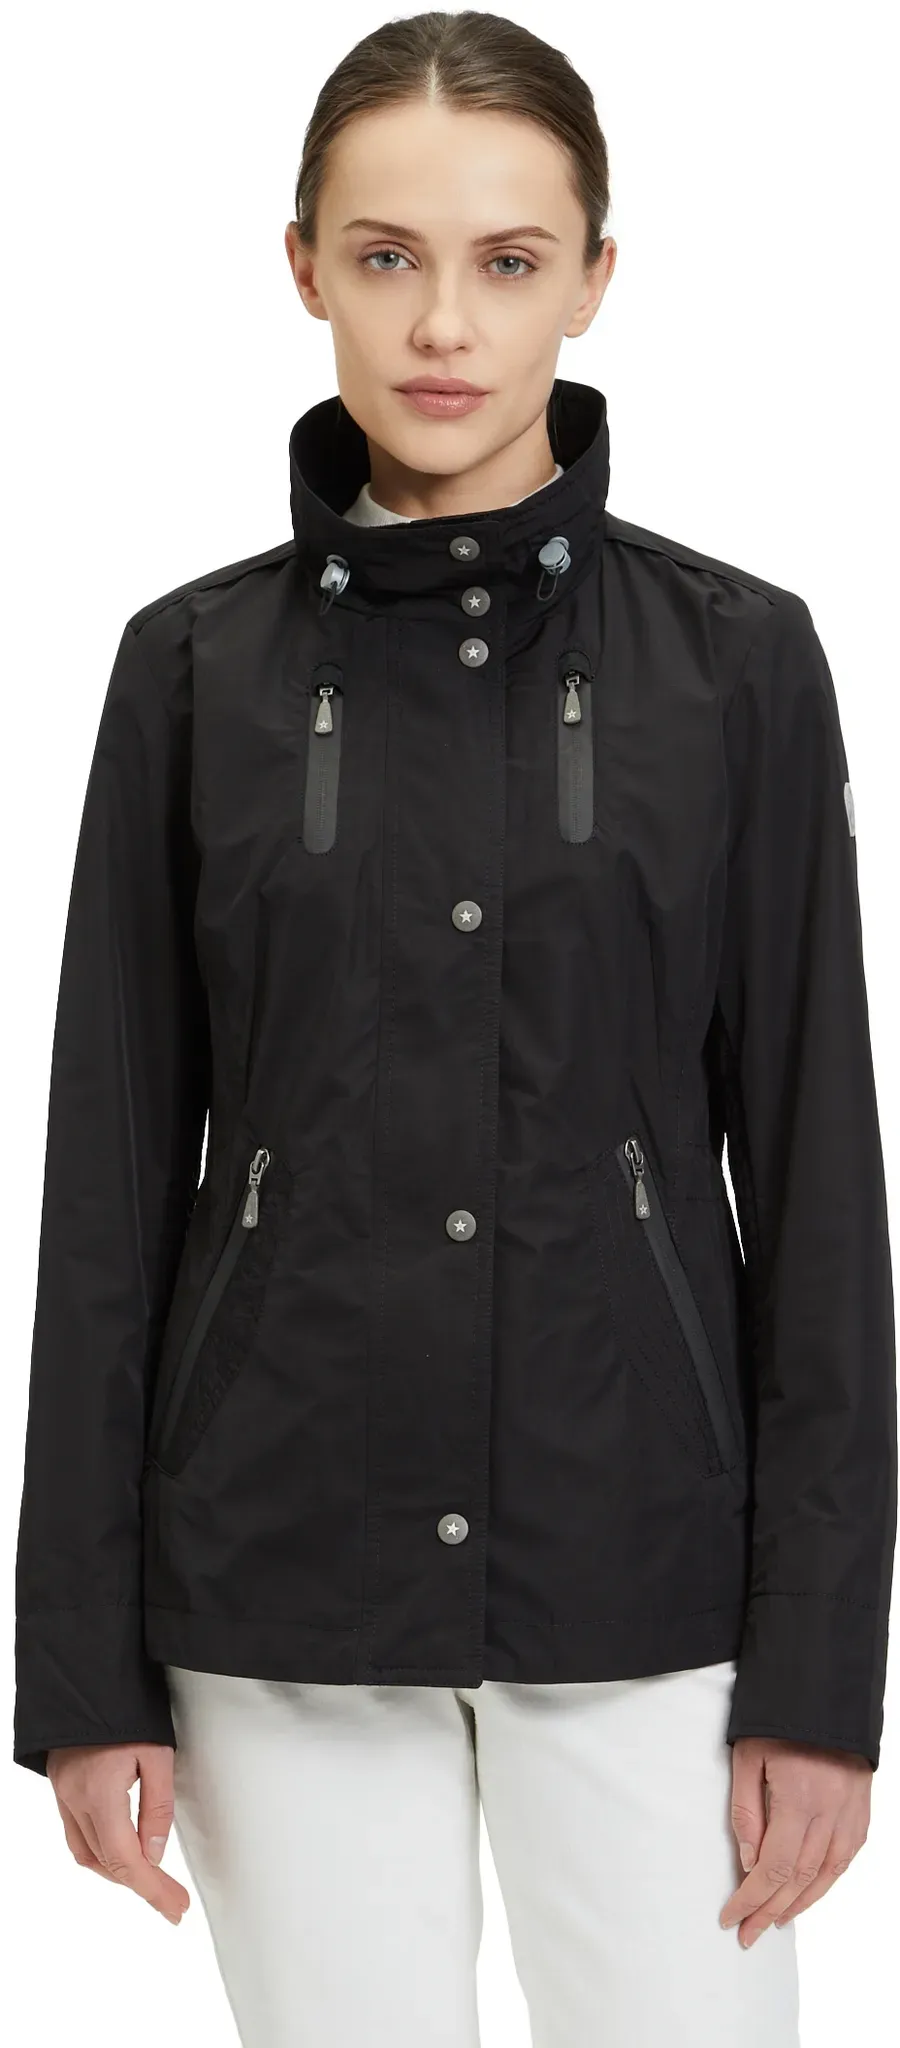 Sommerjacke GIL BRET Gr. 48, schwarz (jet black) Damen Jacken mit Stehkragen